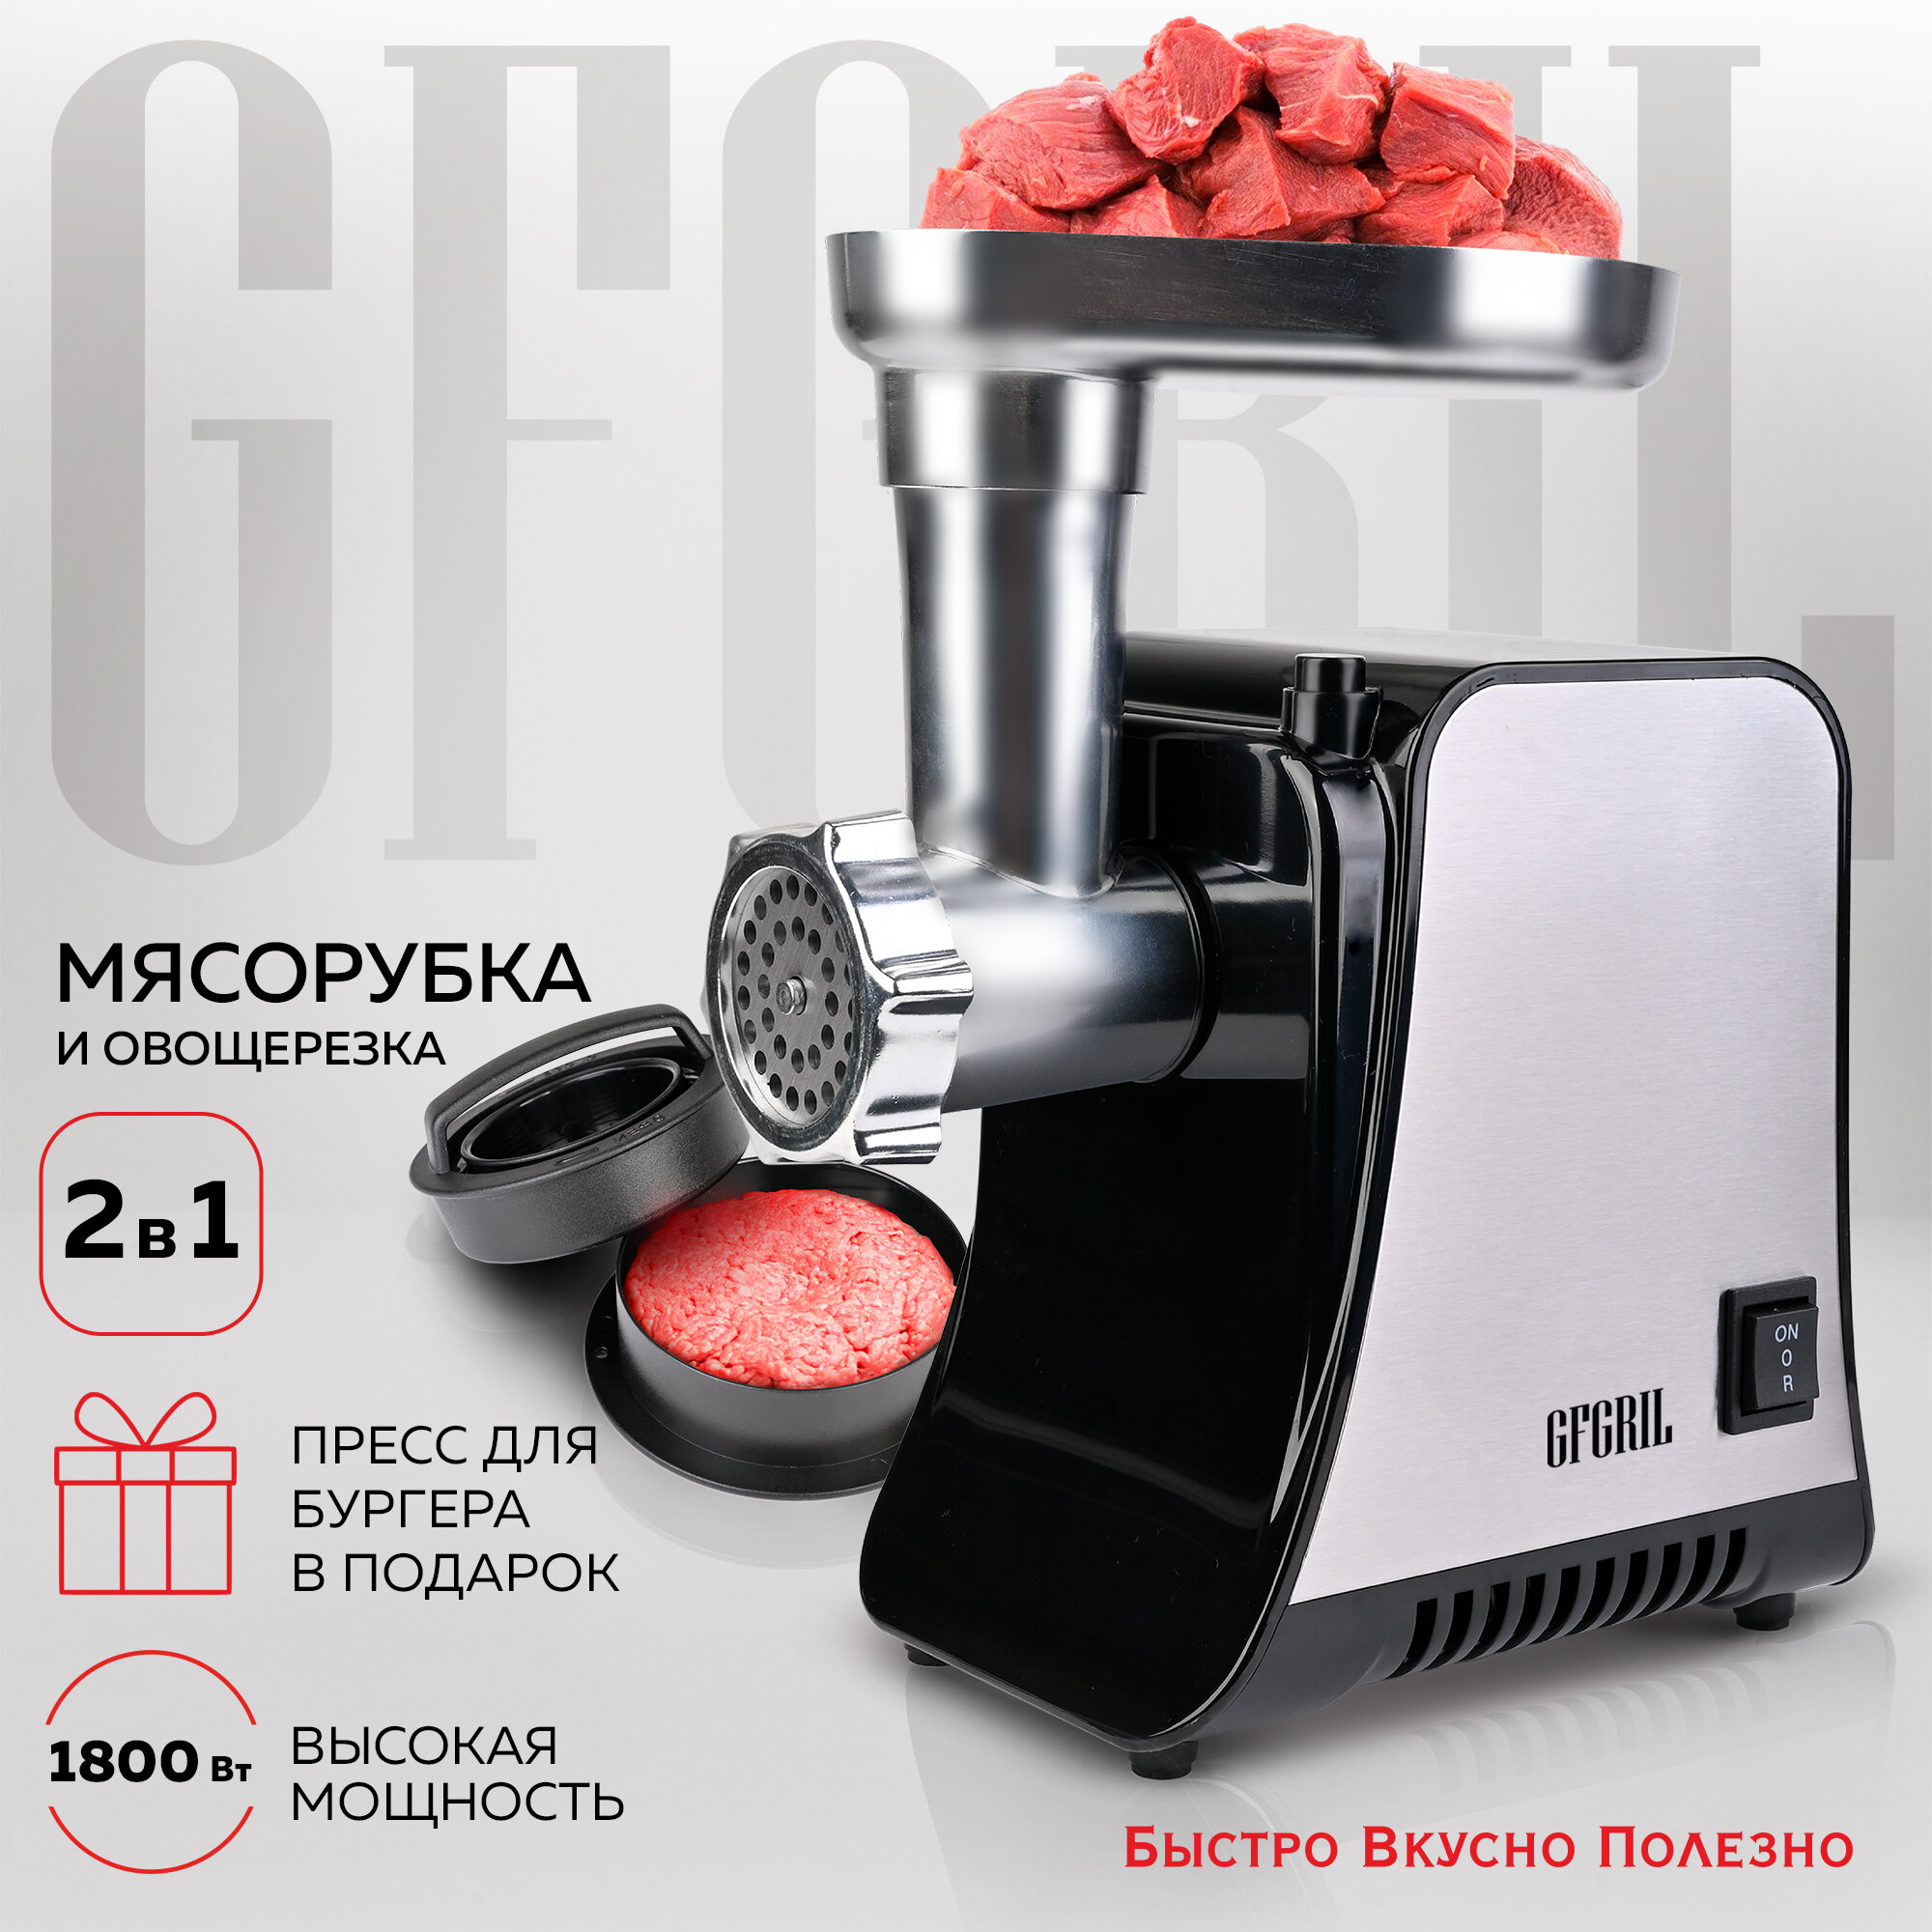 GFGRIL Электрическая мясорубка GF-MG20 2 в 1 с овощерезкой и прессом для бургеров высокая мощность 1800 Вт